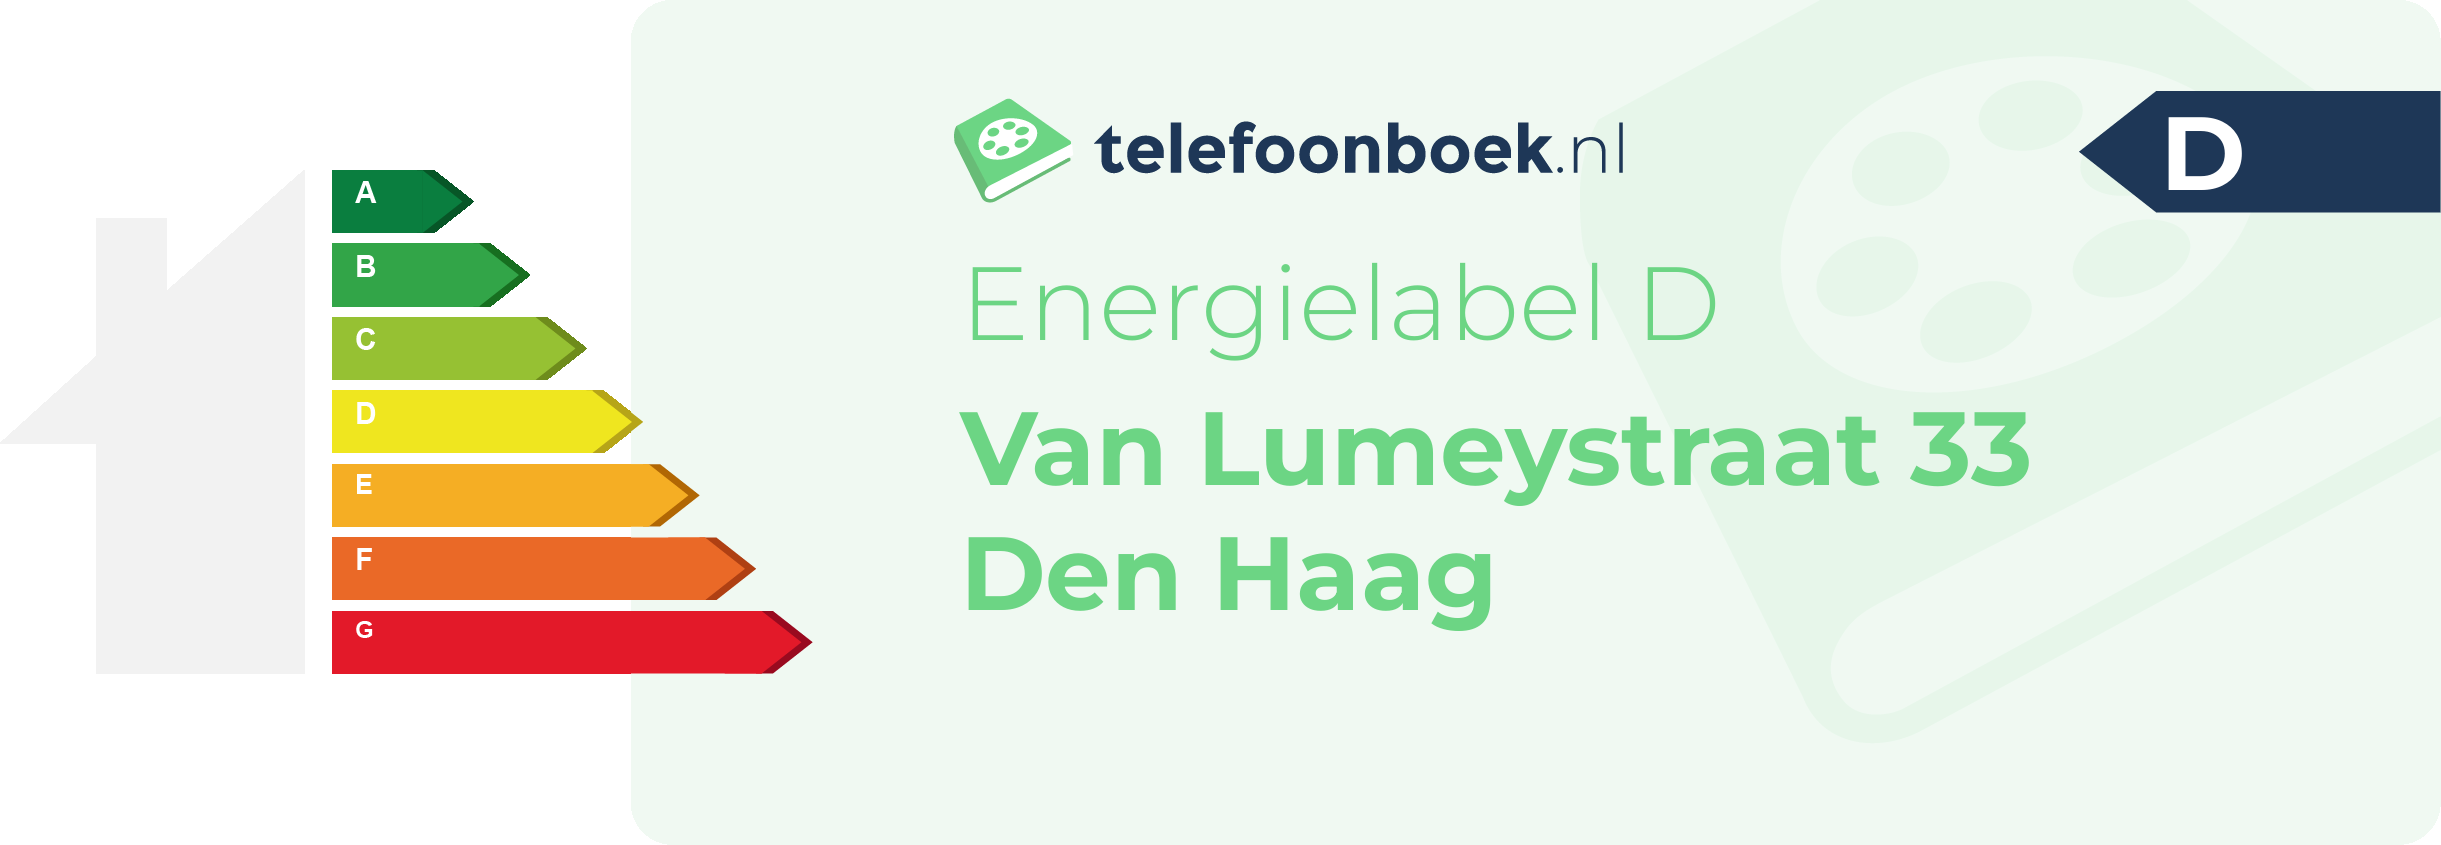 Energielabel Van Lumeystraat 33 Den Haag